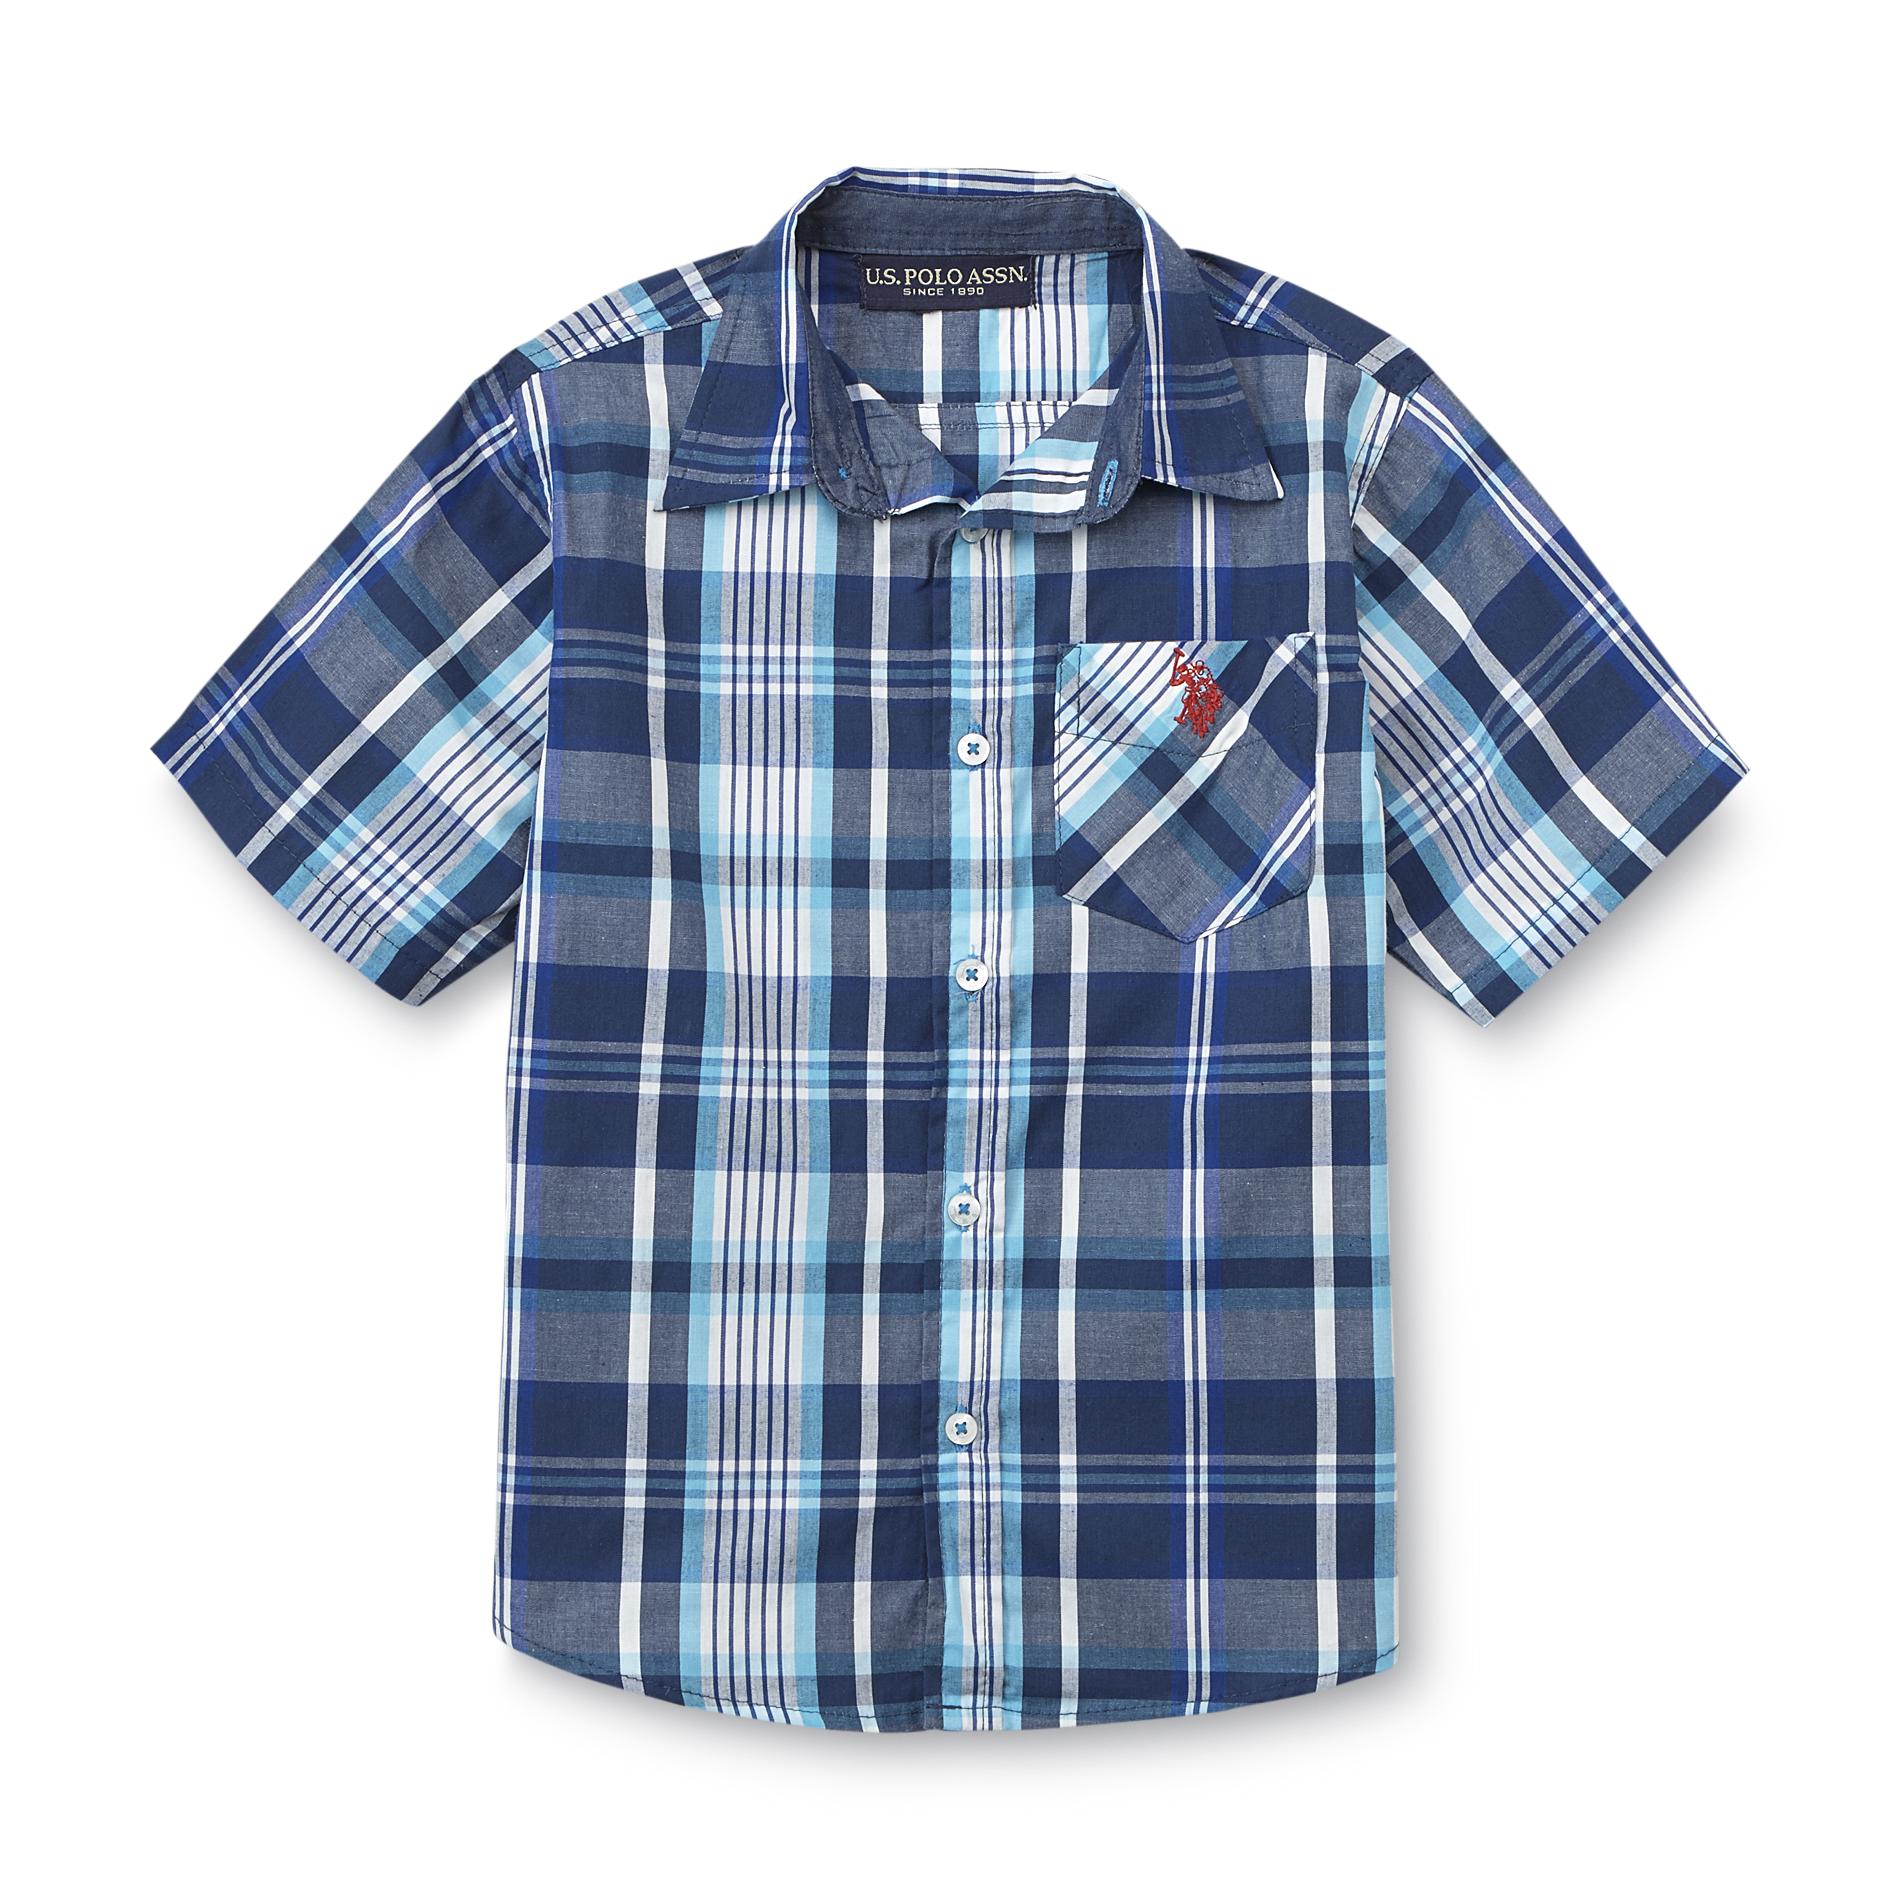 U.S. Polo Assn. Boy's Short-Sleeve Button-Front Shirt - Plaid